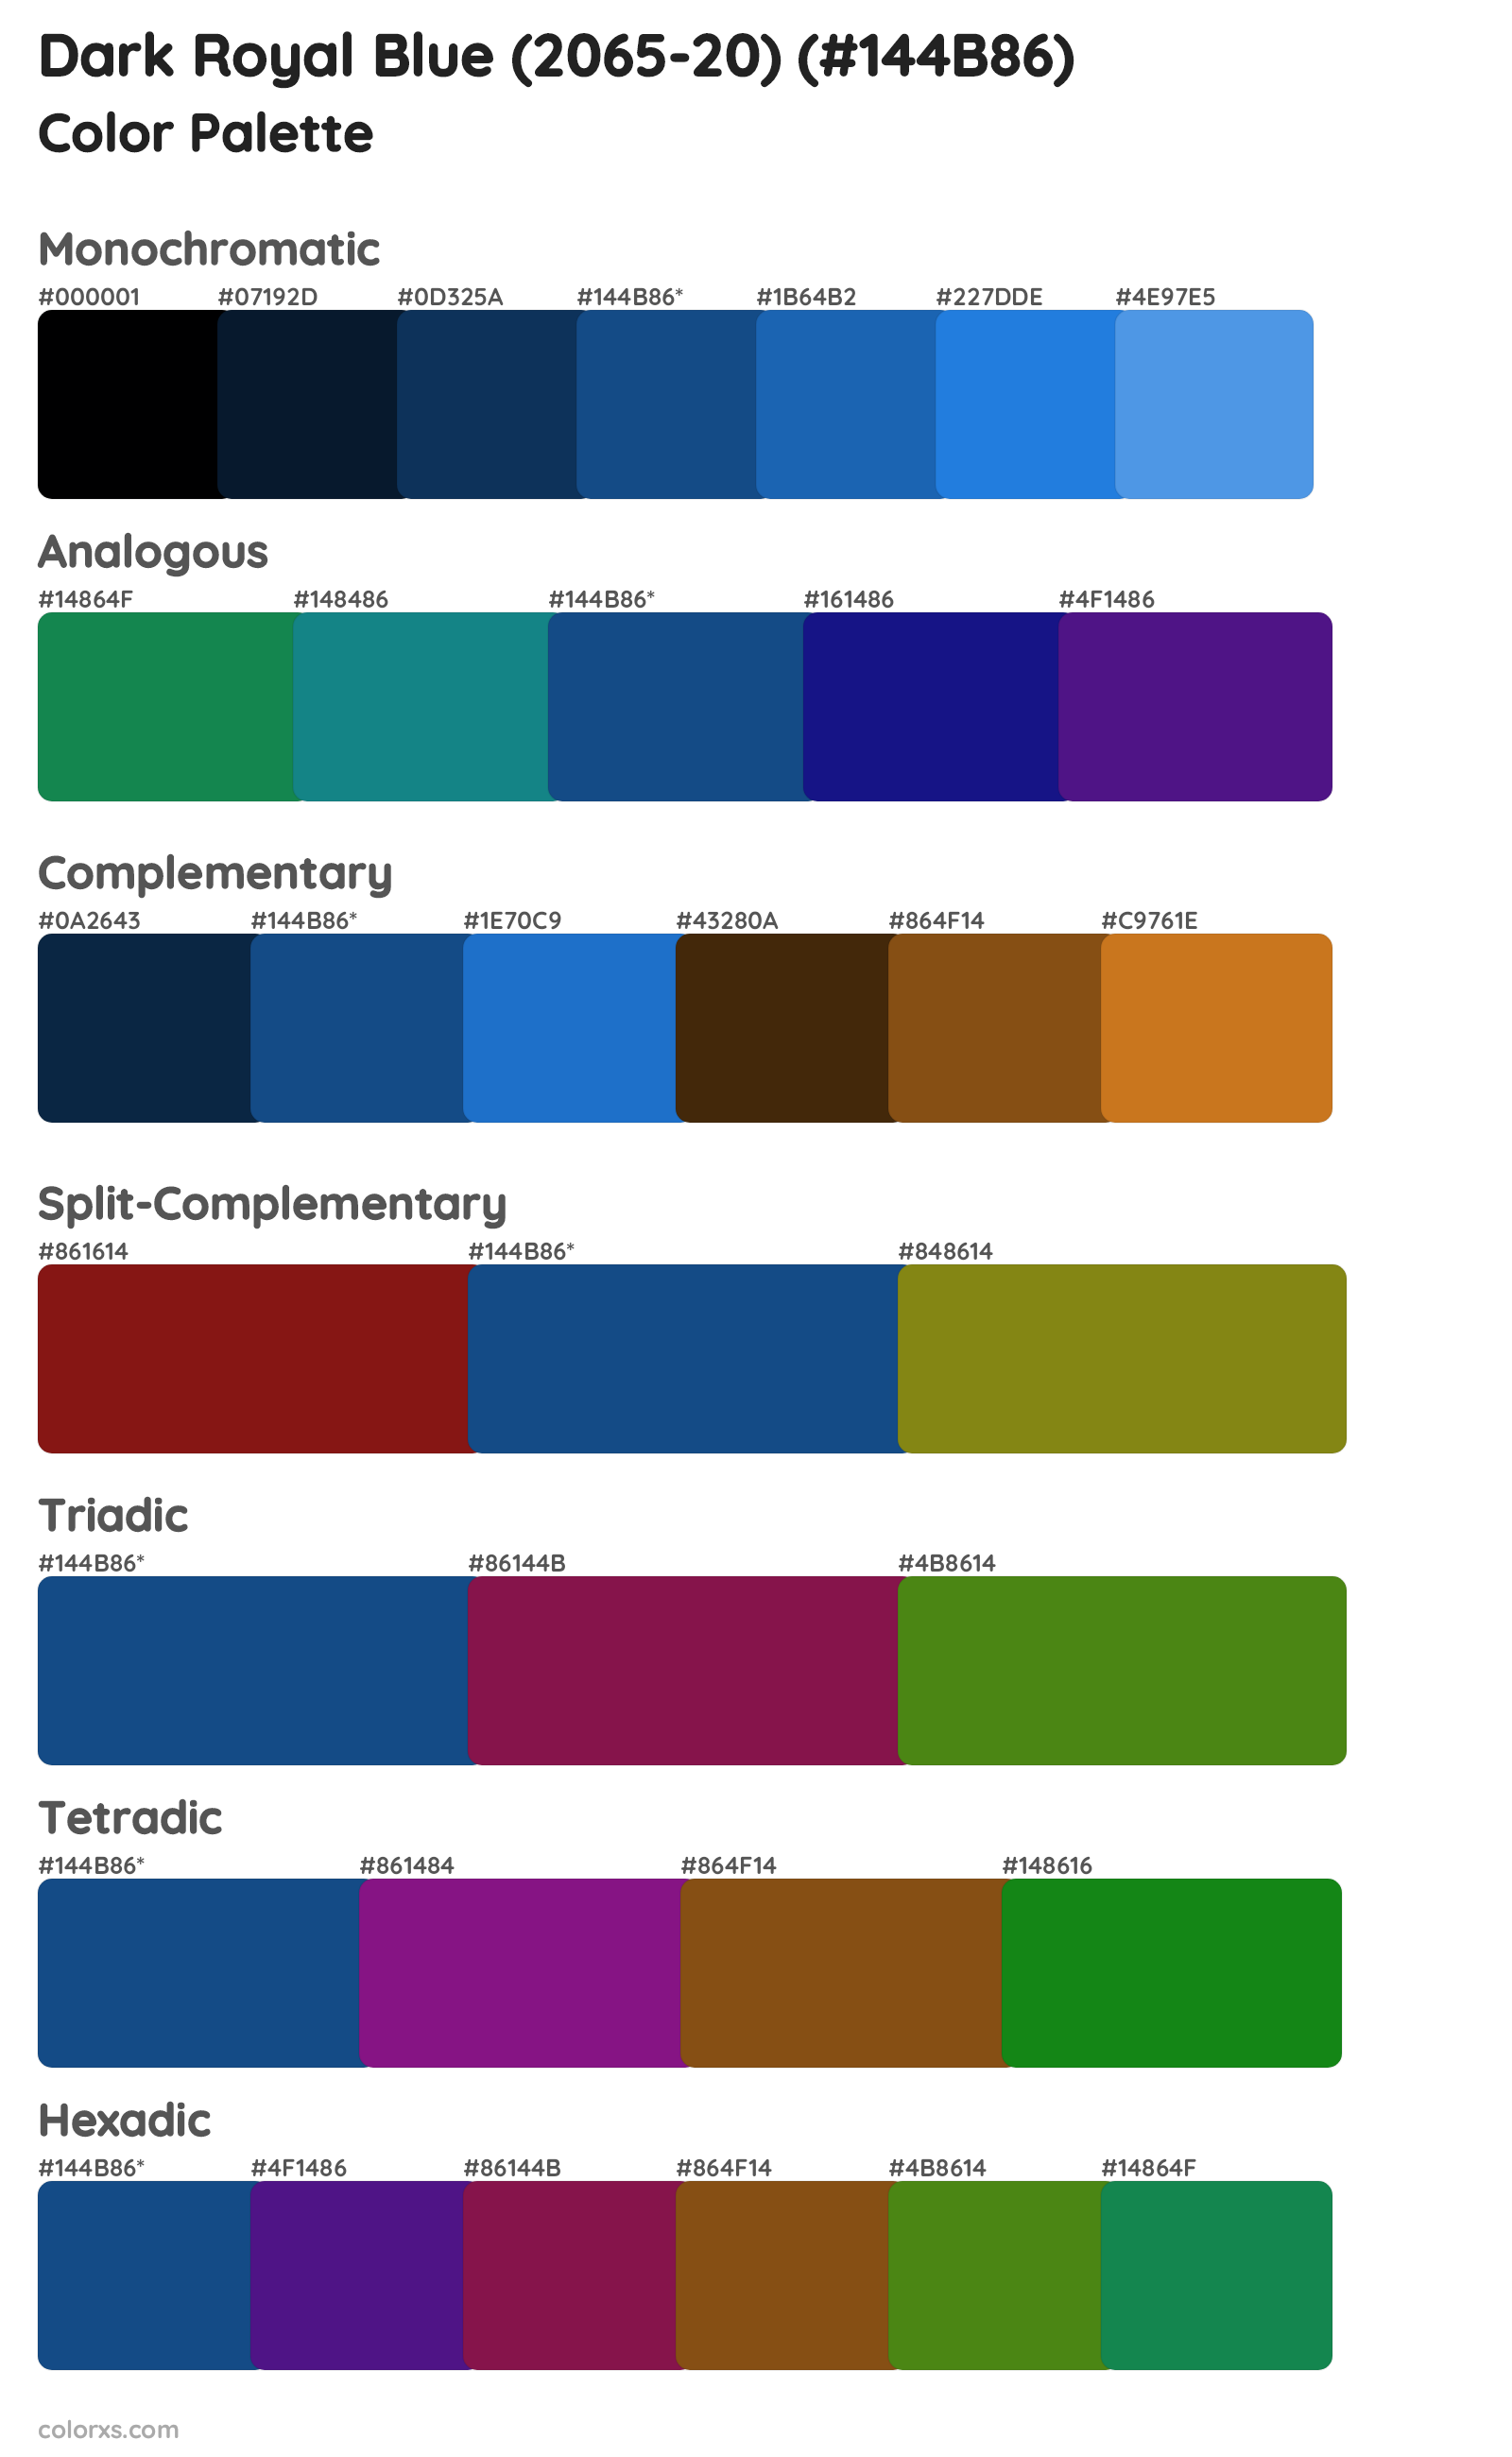 Dark Royal Blue (2065-20) Color Scheme Palettes